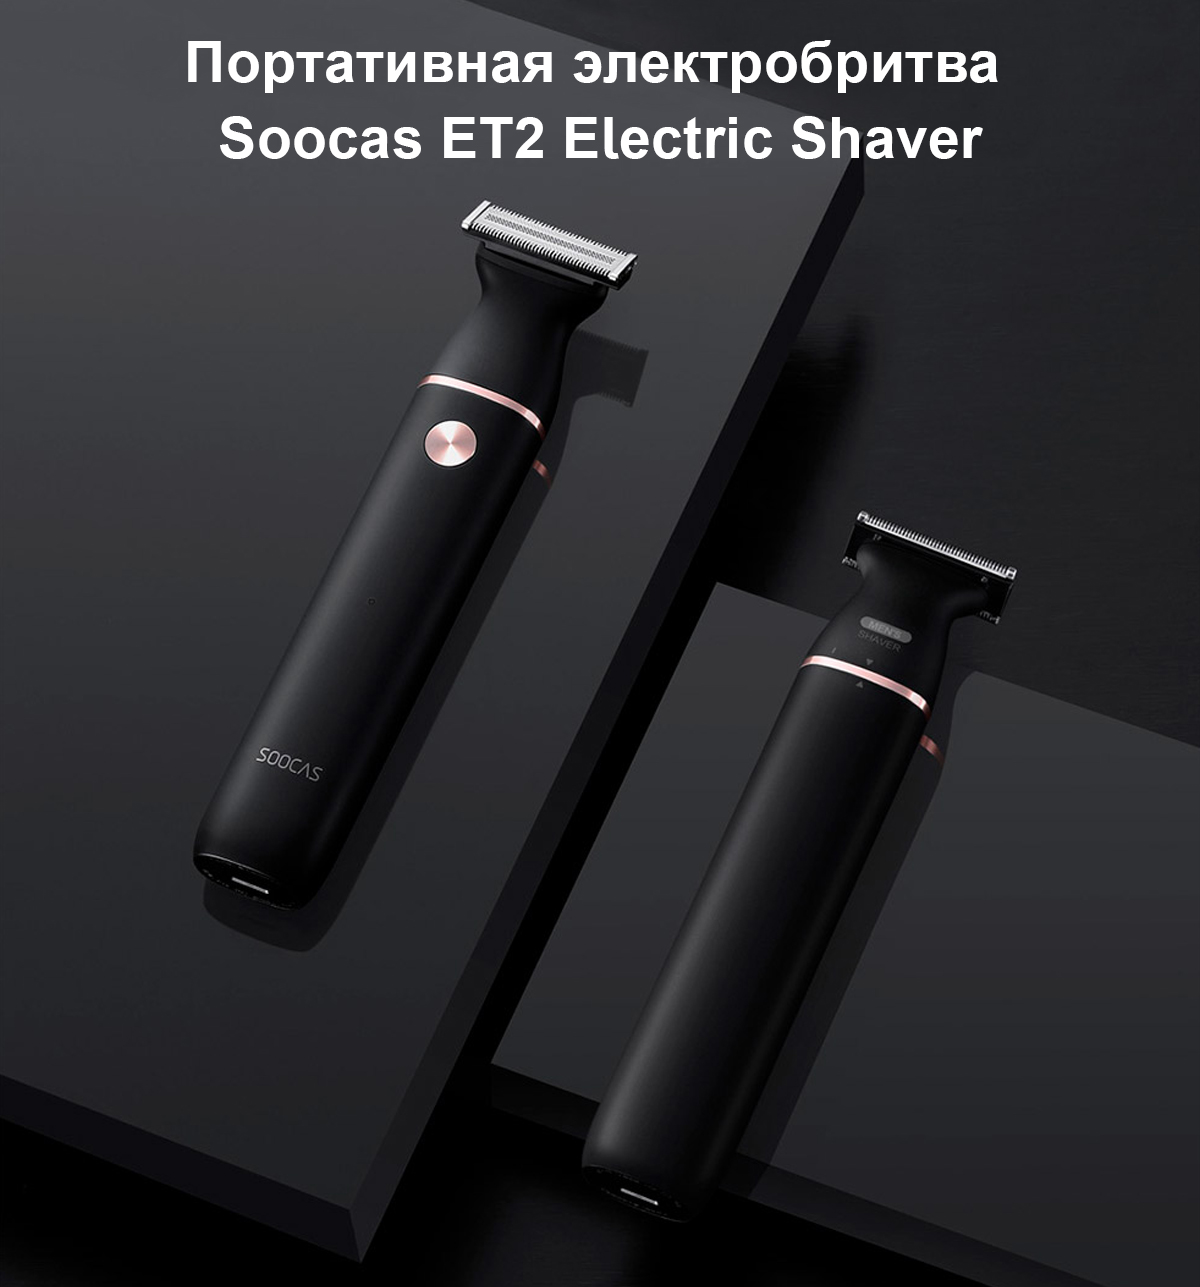 Портативная электробритва Soocas ET2 Electric Shaver